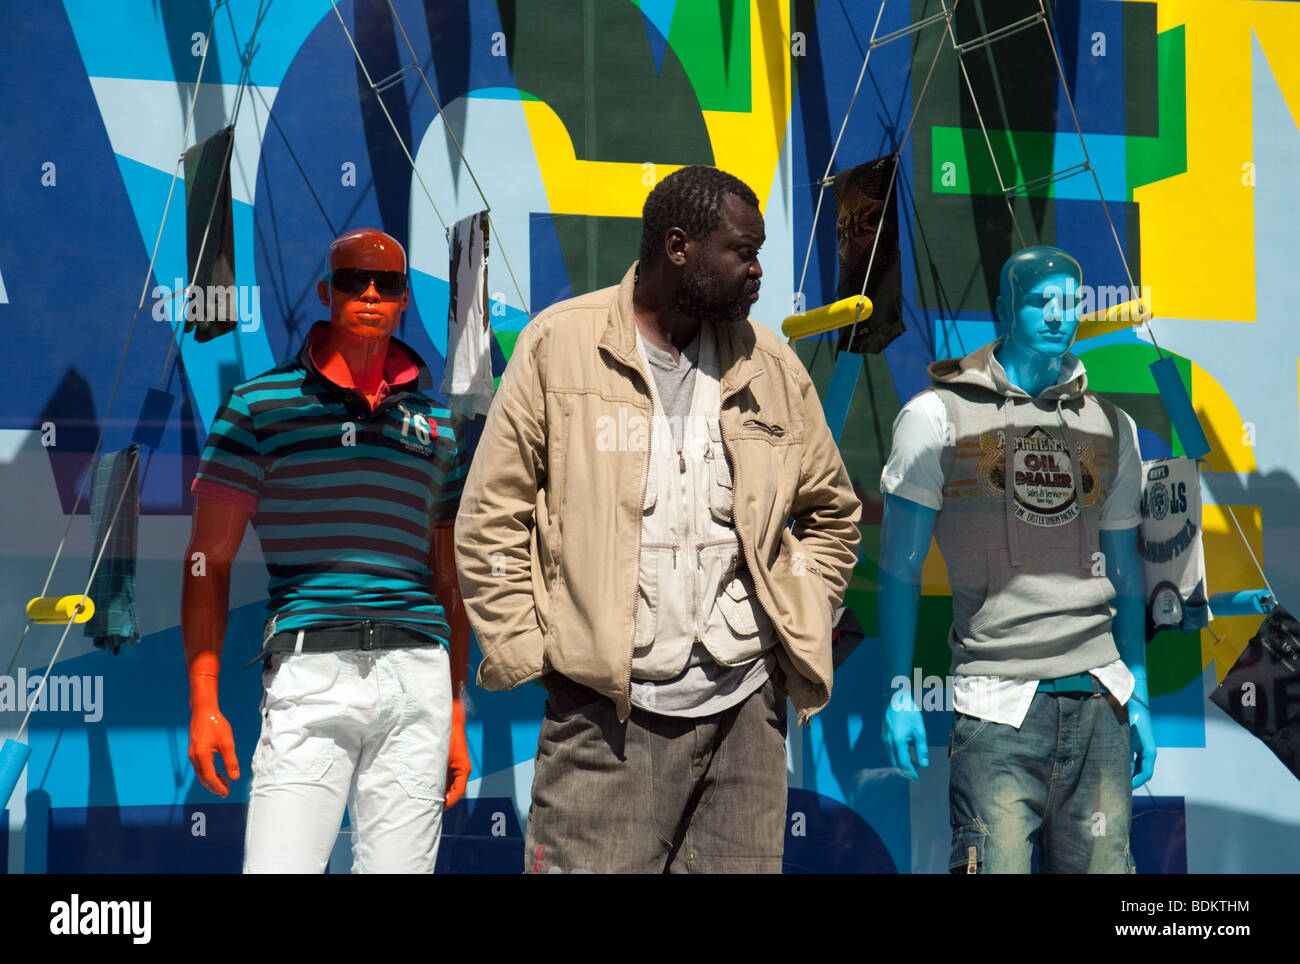 Moda masculina; Un hombre negro se encuentra frente a dos maniquíes en un escaparate, París, Francia; Concept Diversity Foto de stock